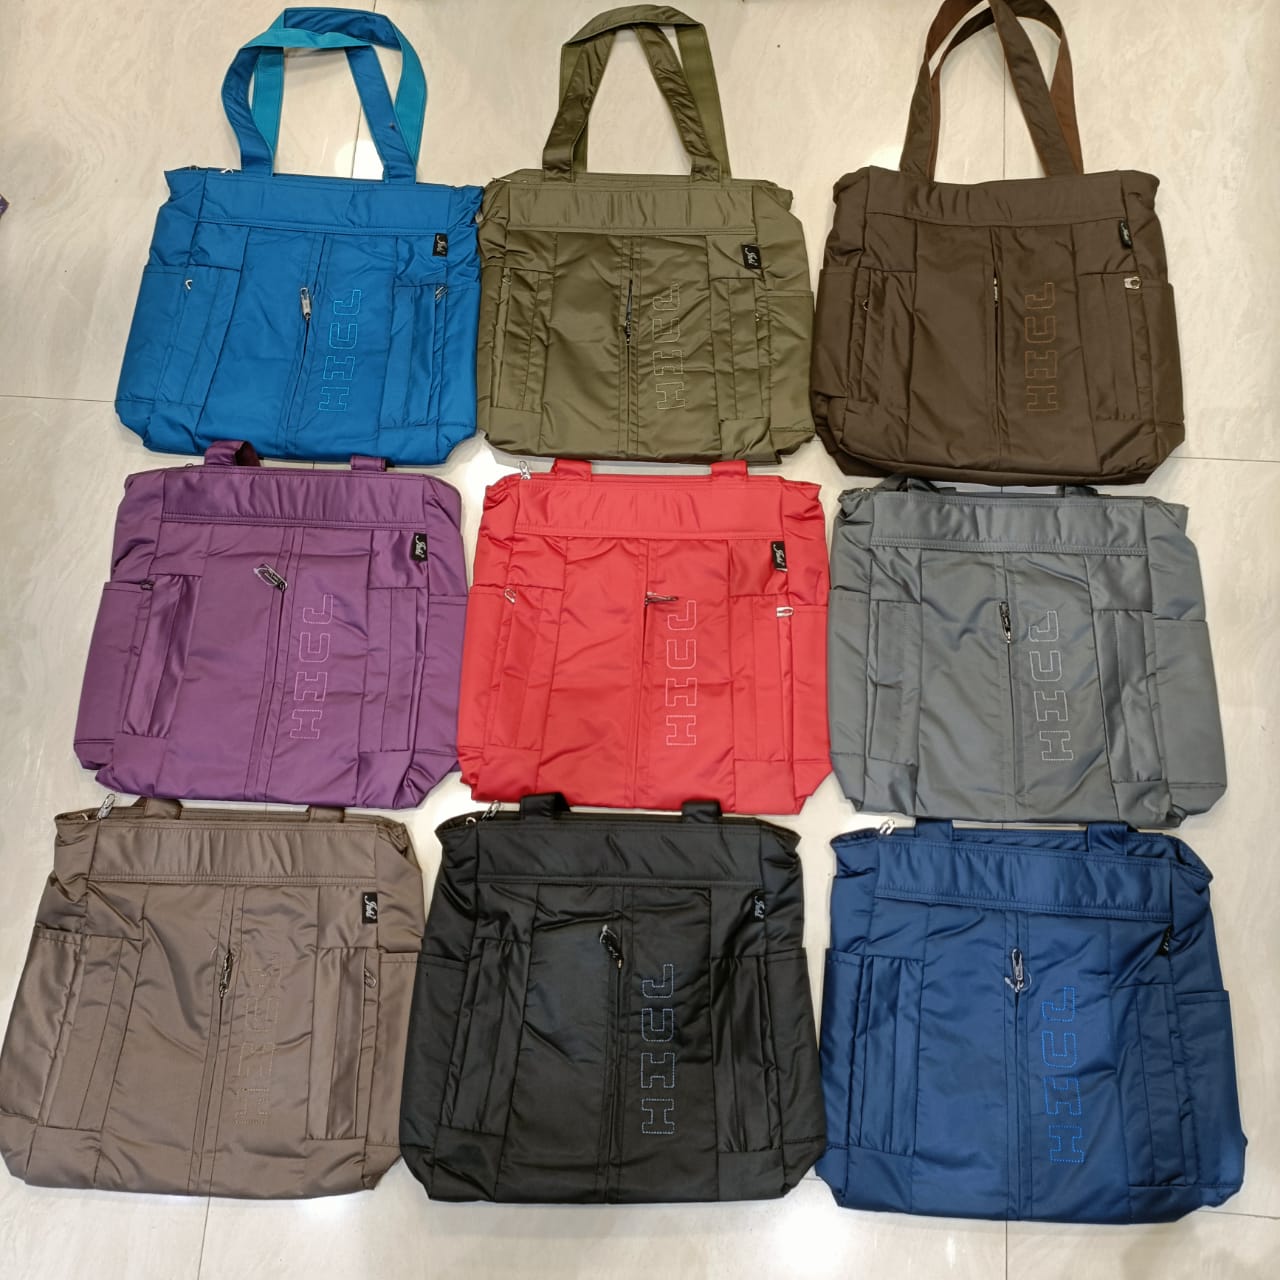 Abc's big size 5 pocket handbag best for carrying big size register